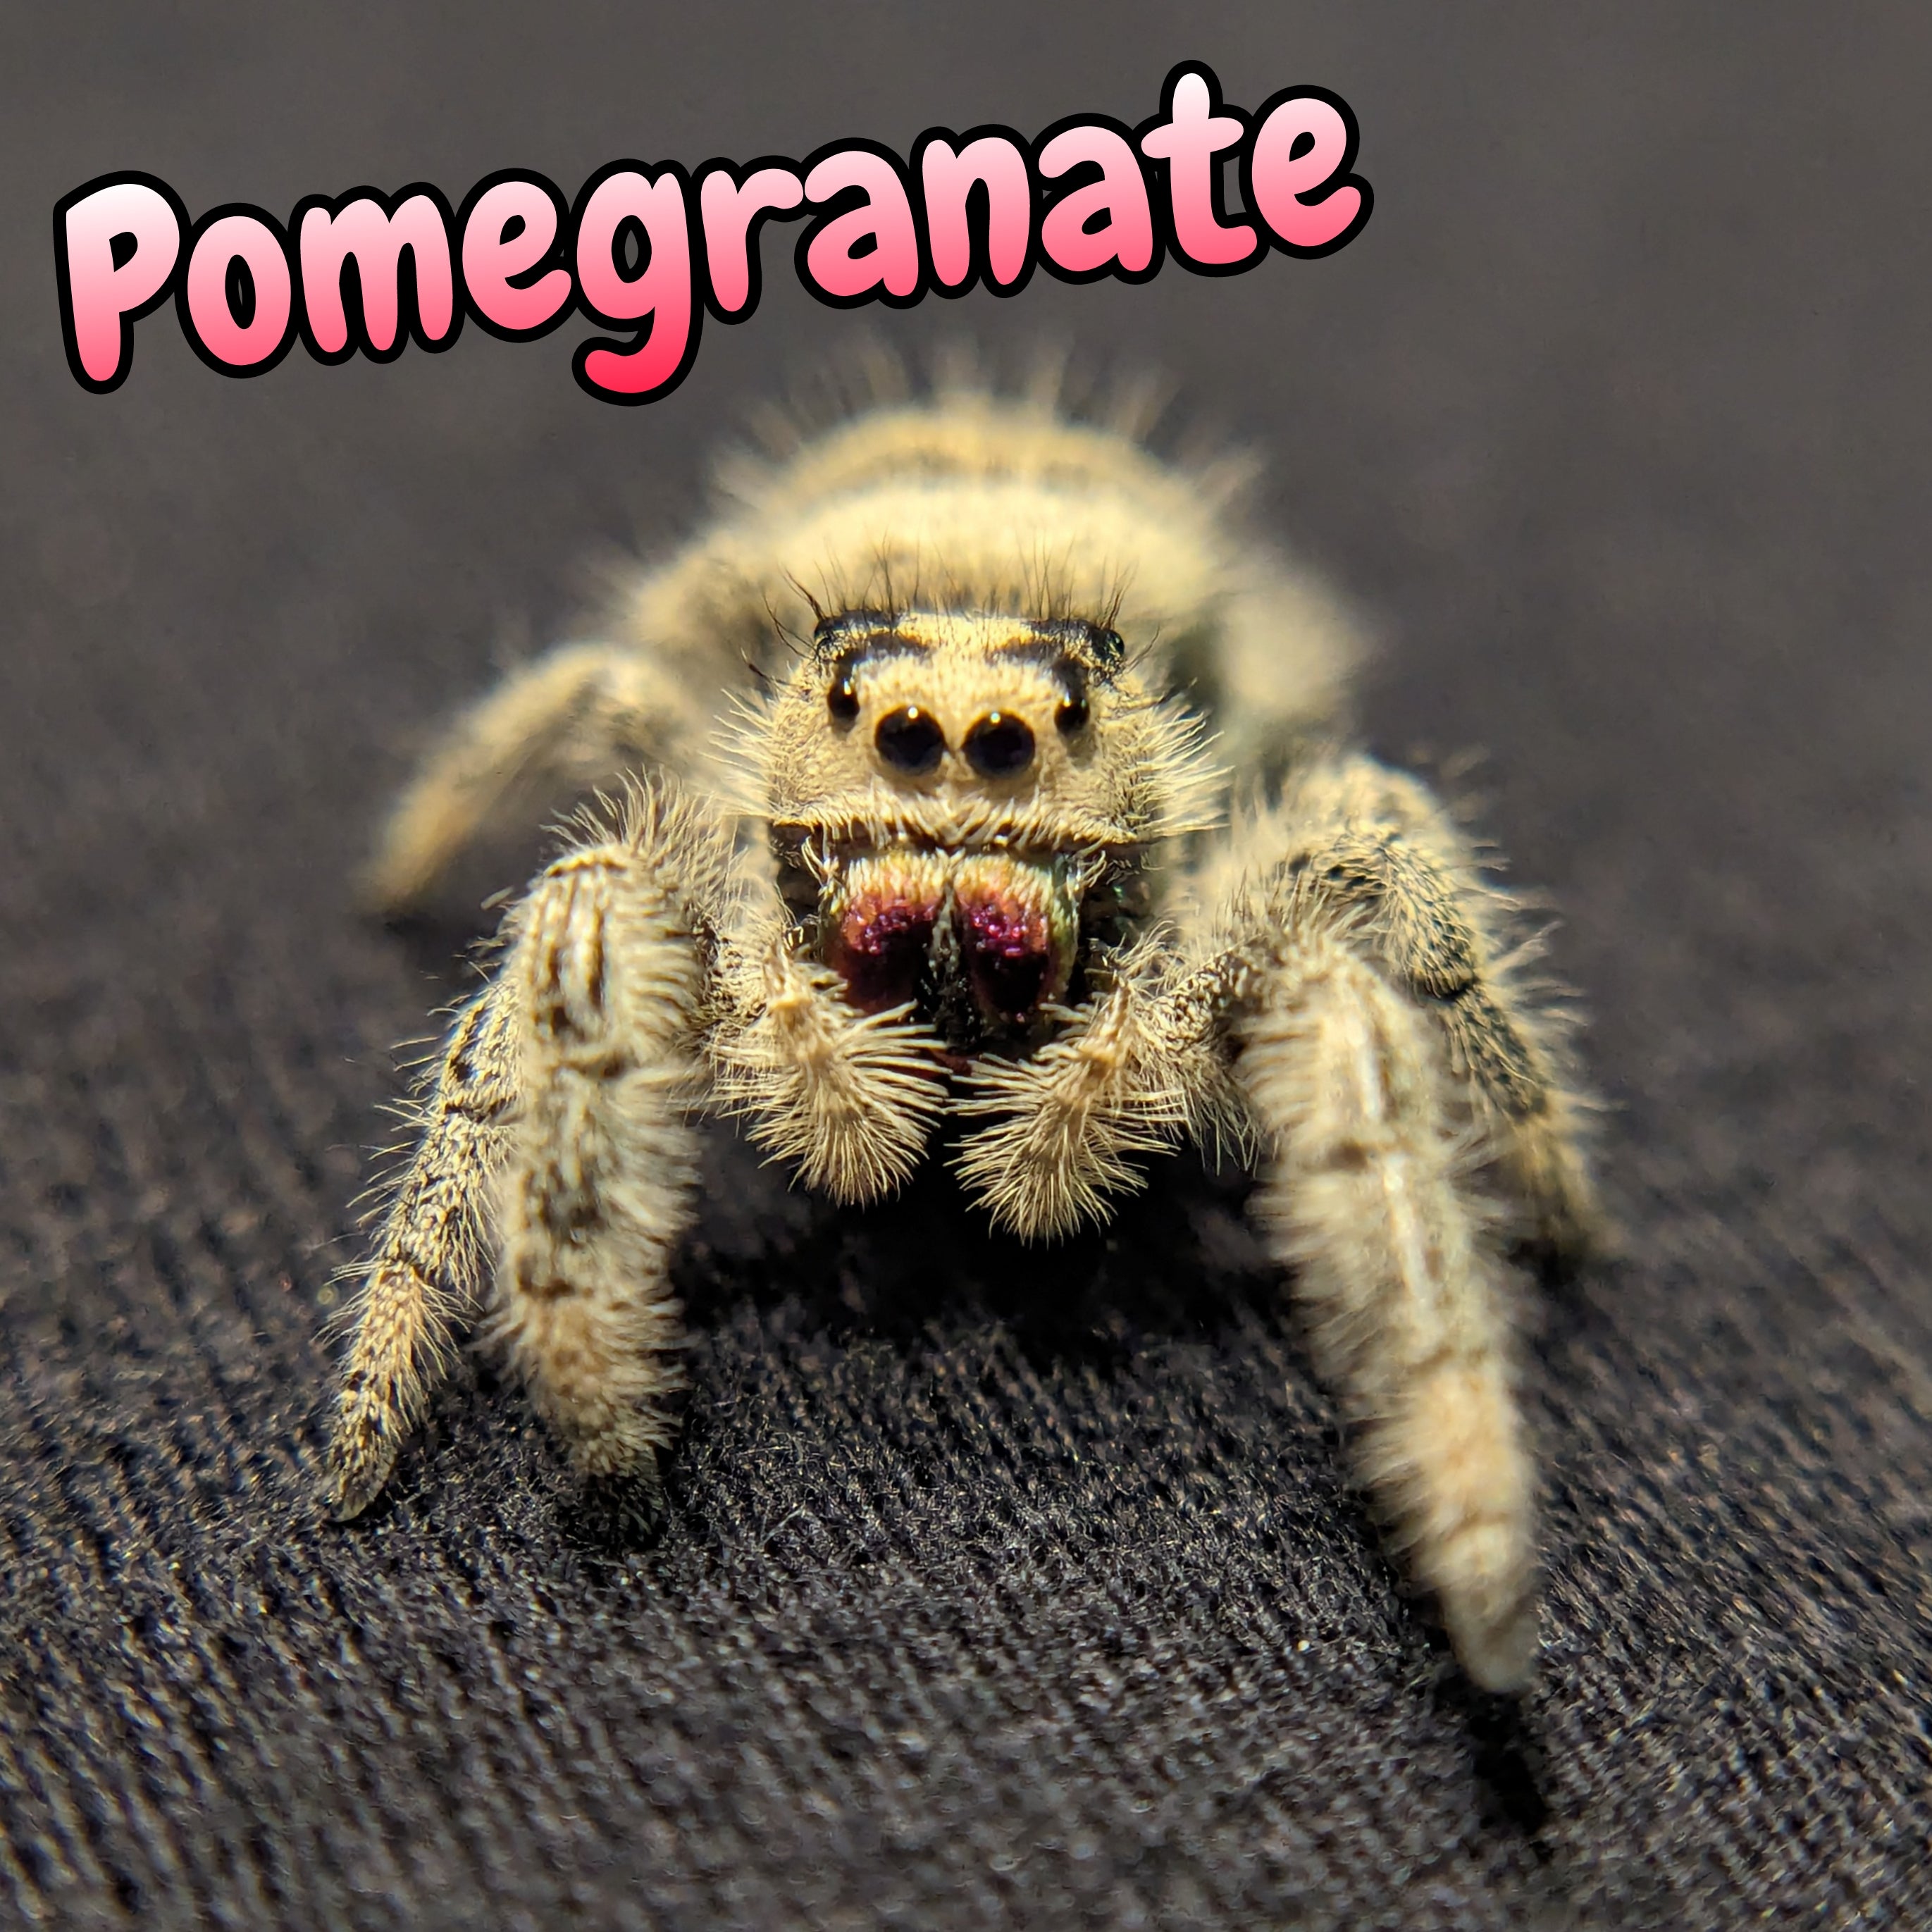 Regal Jumping Spider "Pomegranate"